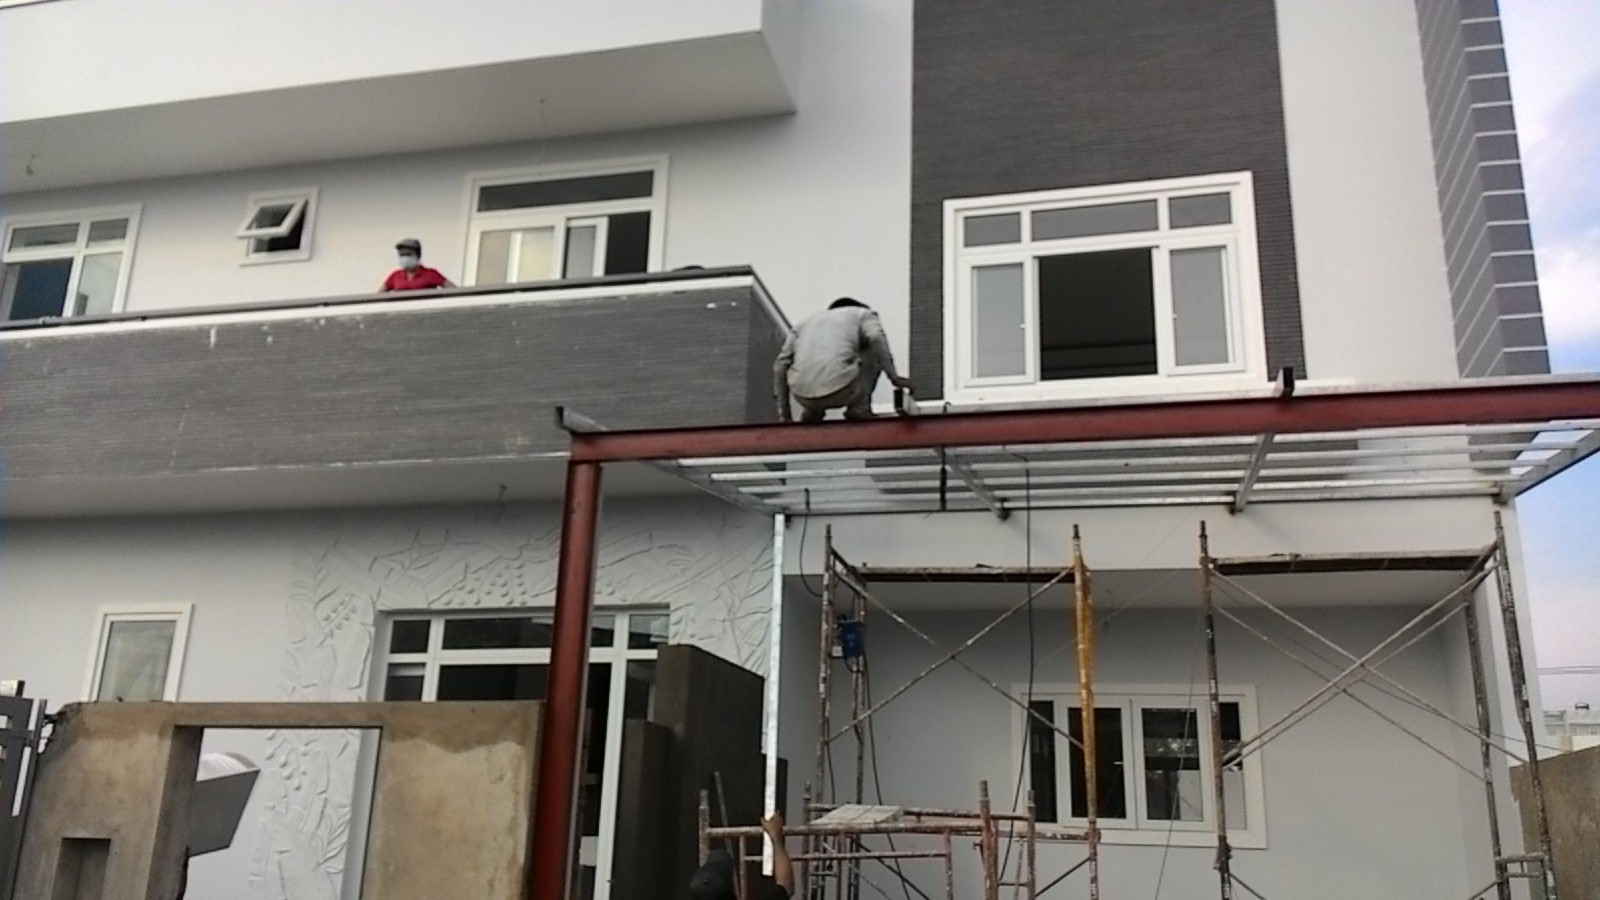 Thi công sửa chữa nhà - Dịch Vụ Sơn Sửa Nhà Giá Rẻ Tại Đà Nẵng, Quảng Nam